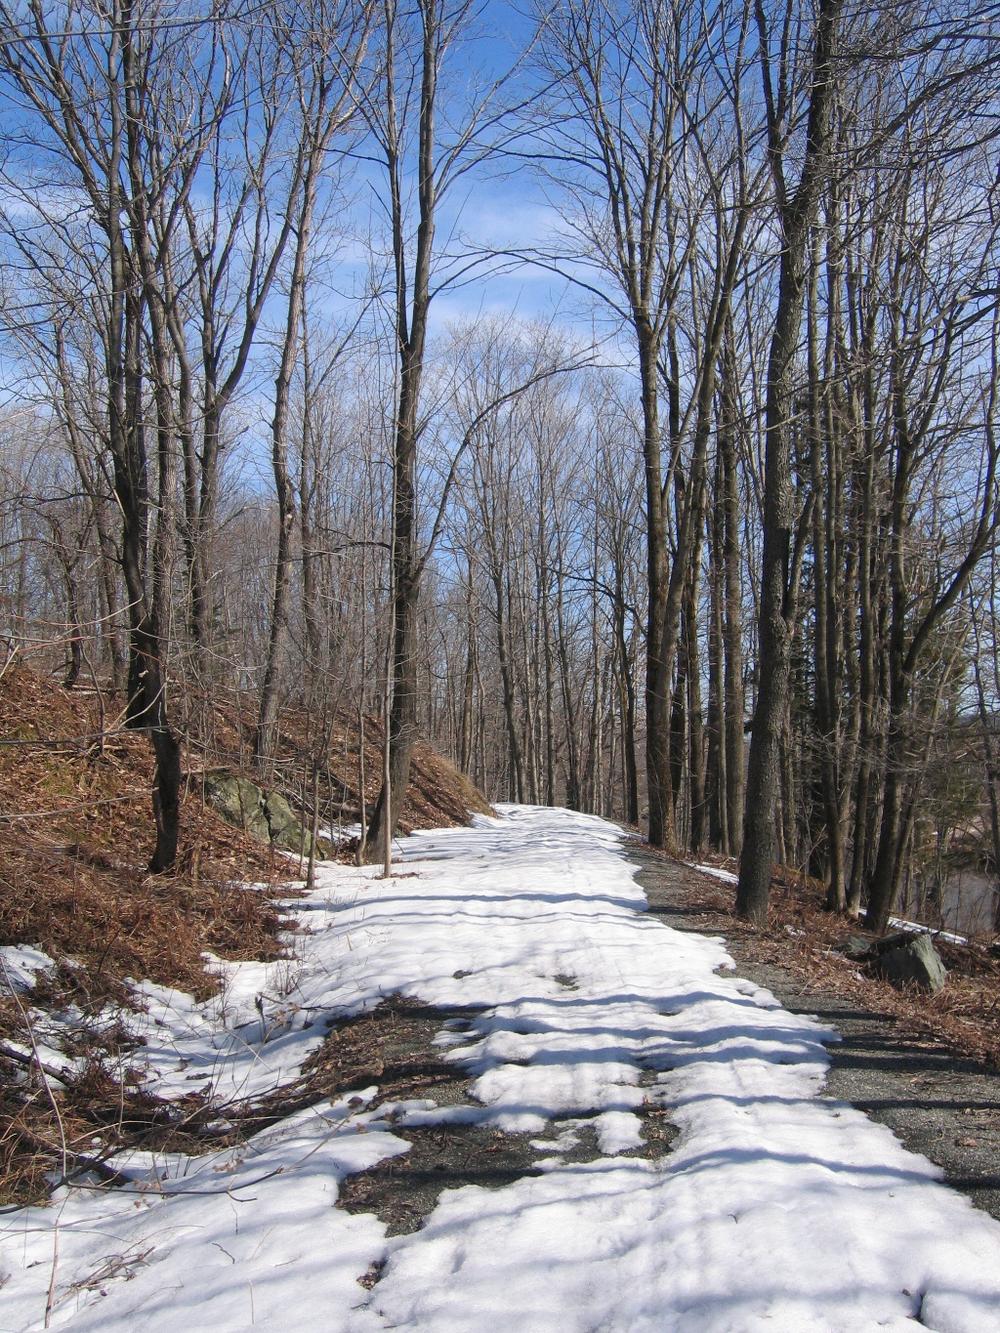 Une image montrant un chemin enneigé qui traverse une forêt darbres nus.